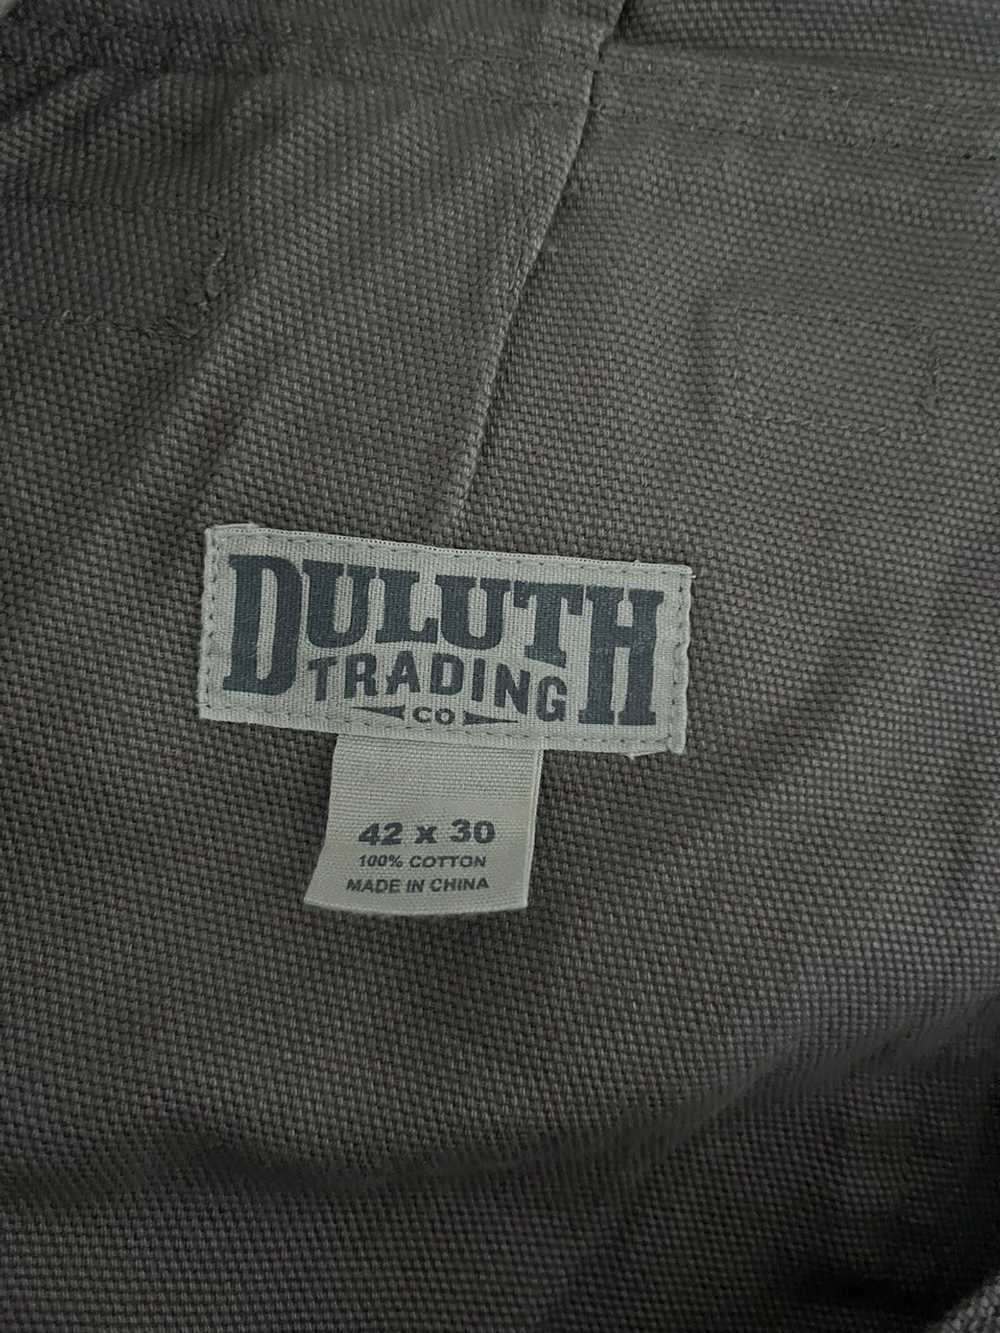 Duluth Trading Company Khaki Carpenter Cargo Rela… - image 4